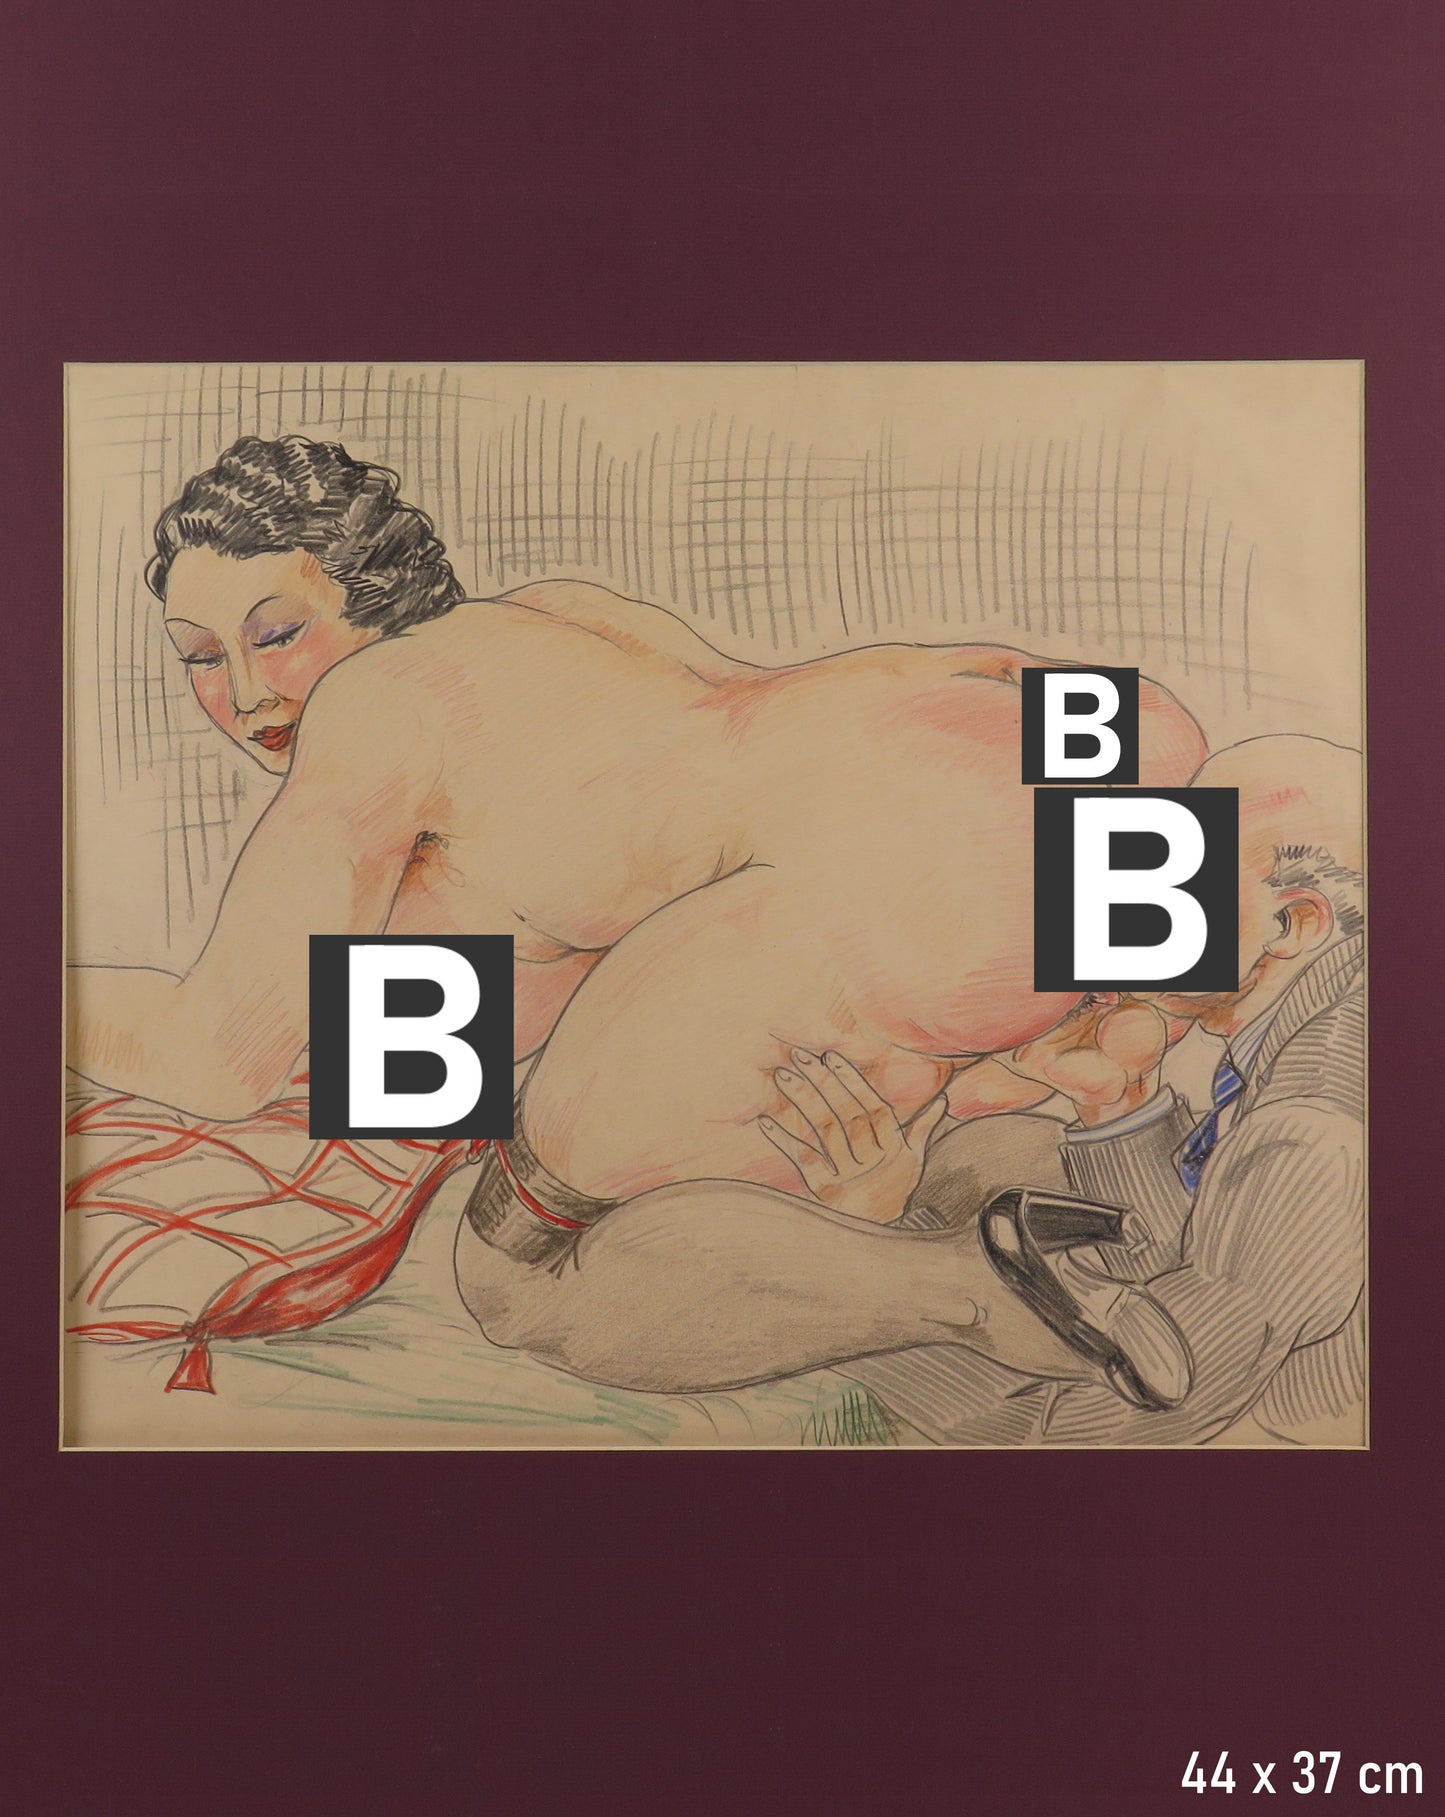 Collezione di 10 disegni erotici porno artistico vintage provenienti dalla casa chiusa di Torino Via Conte Verde nudi scene erotiche artistiche BM53.8